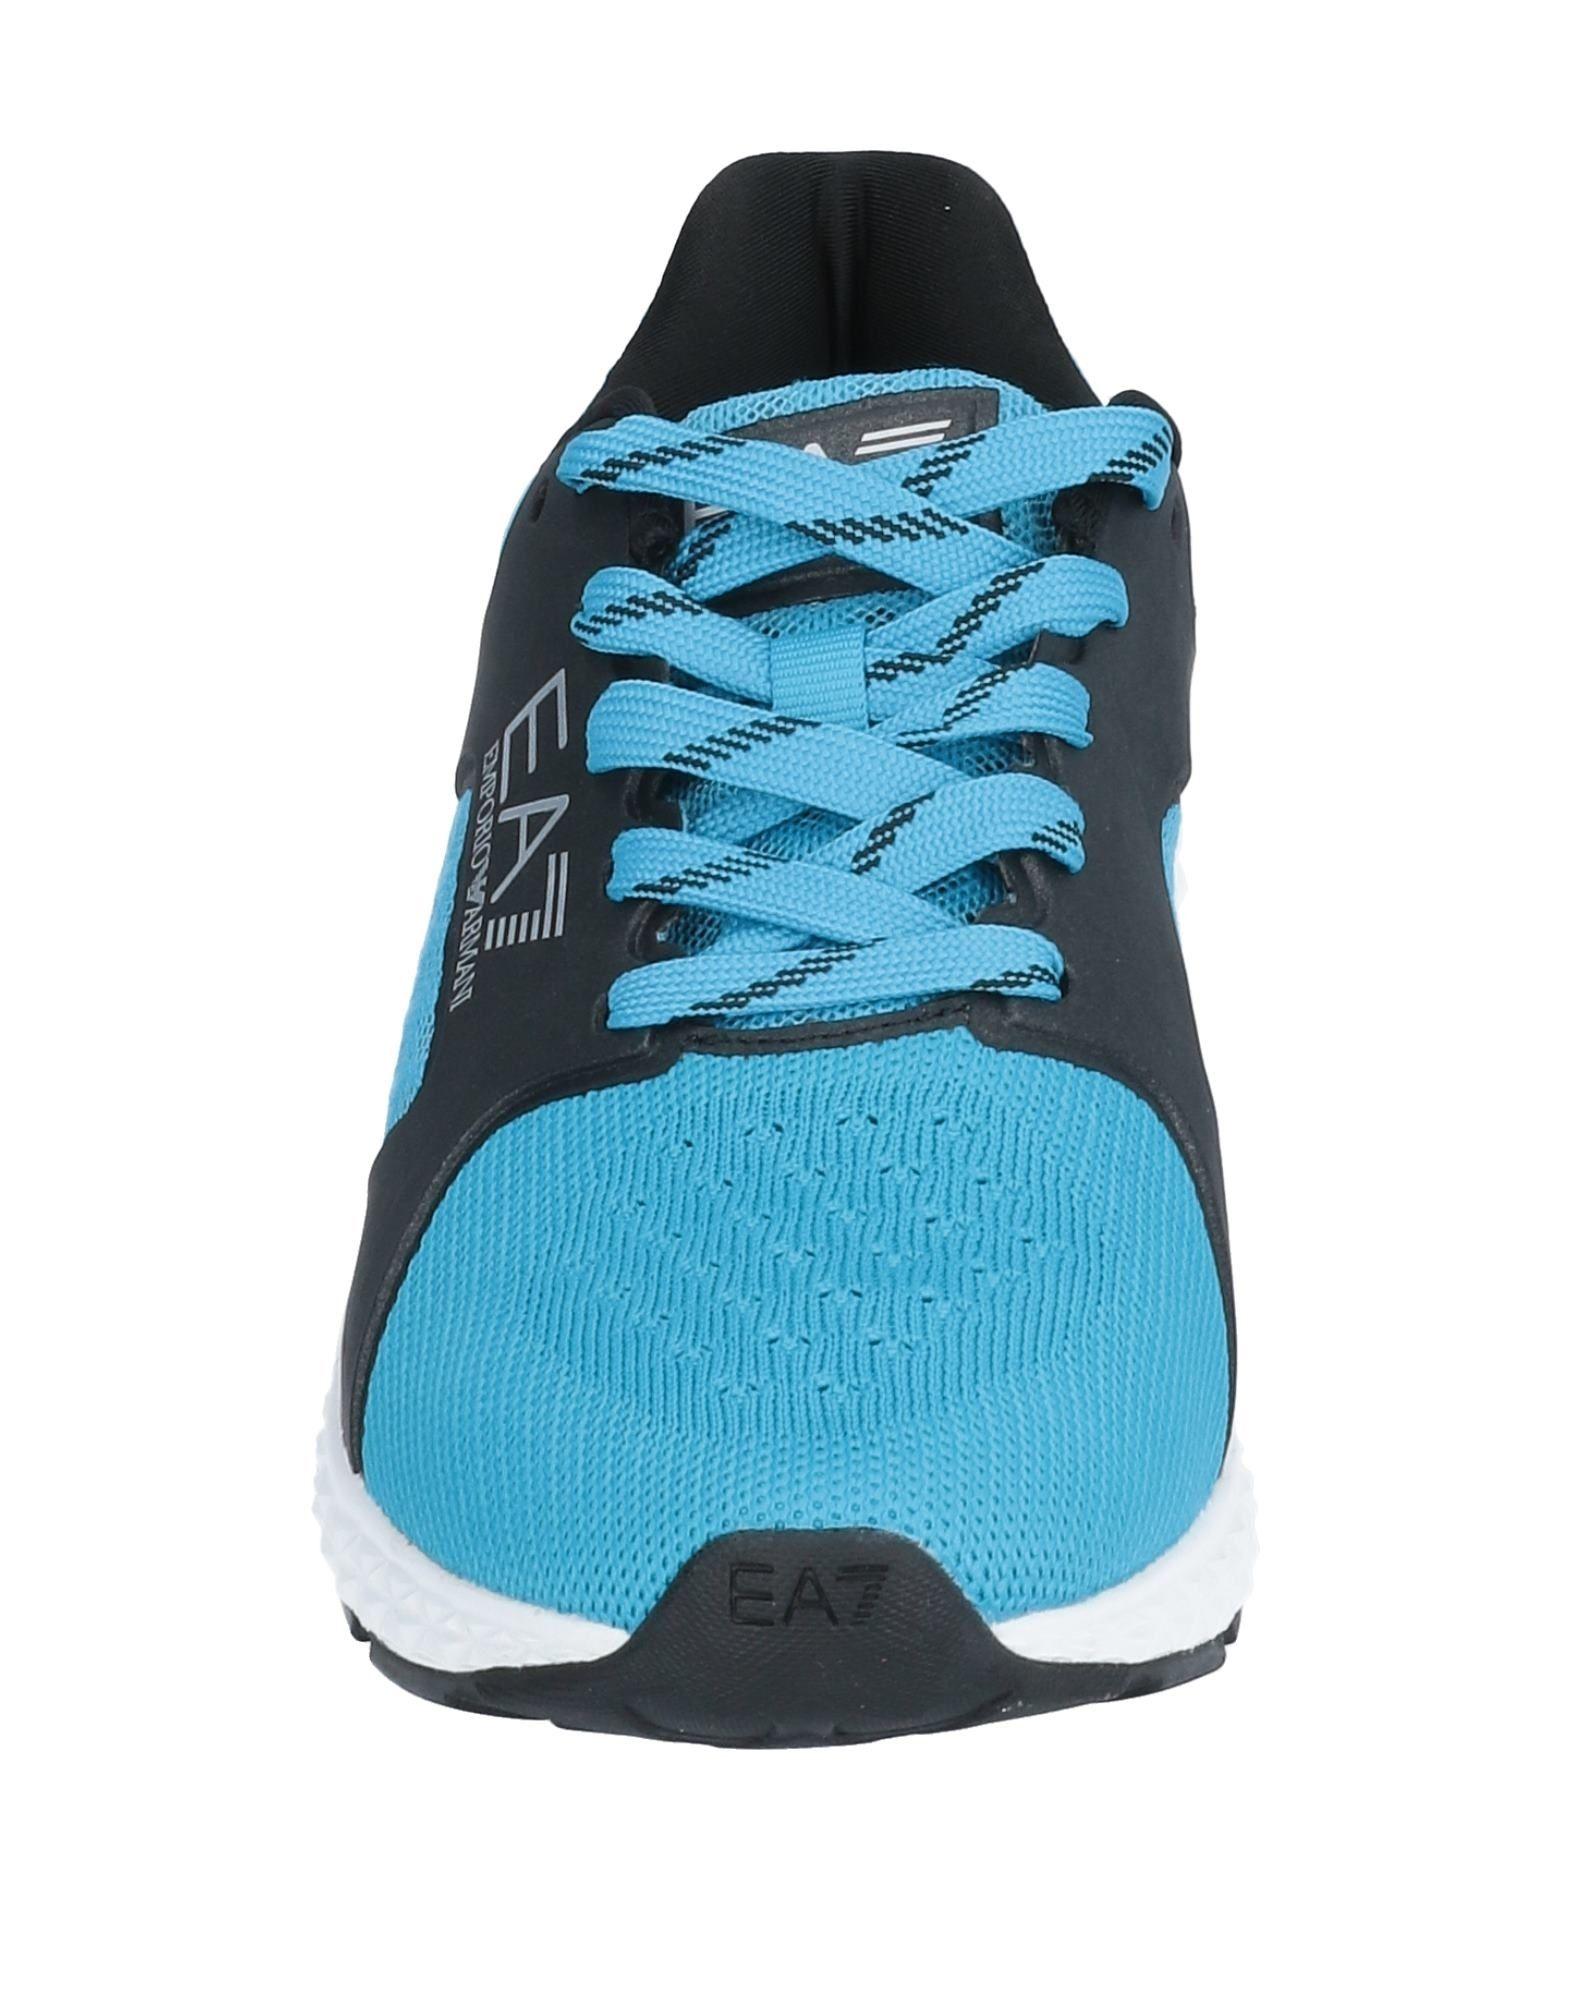 EA7 Rubber Low-tops & Sneakers in Azure (Blue) for Men - Lyst